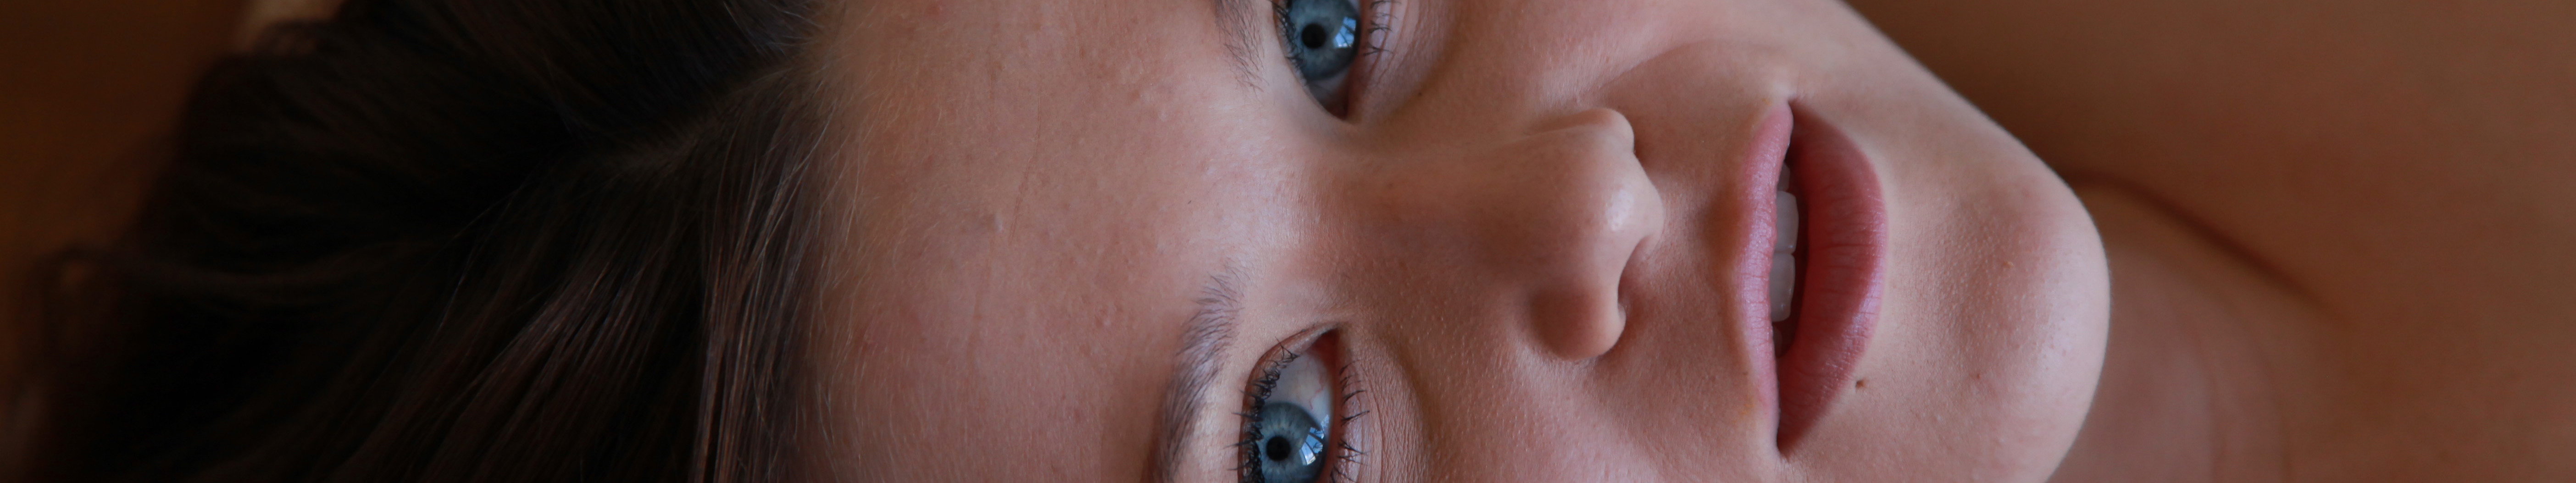 Women Triple Screen Face Blue Eyes 5616x1053